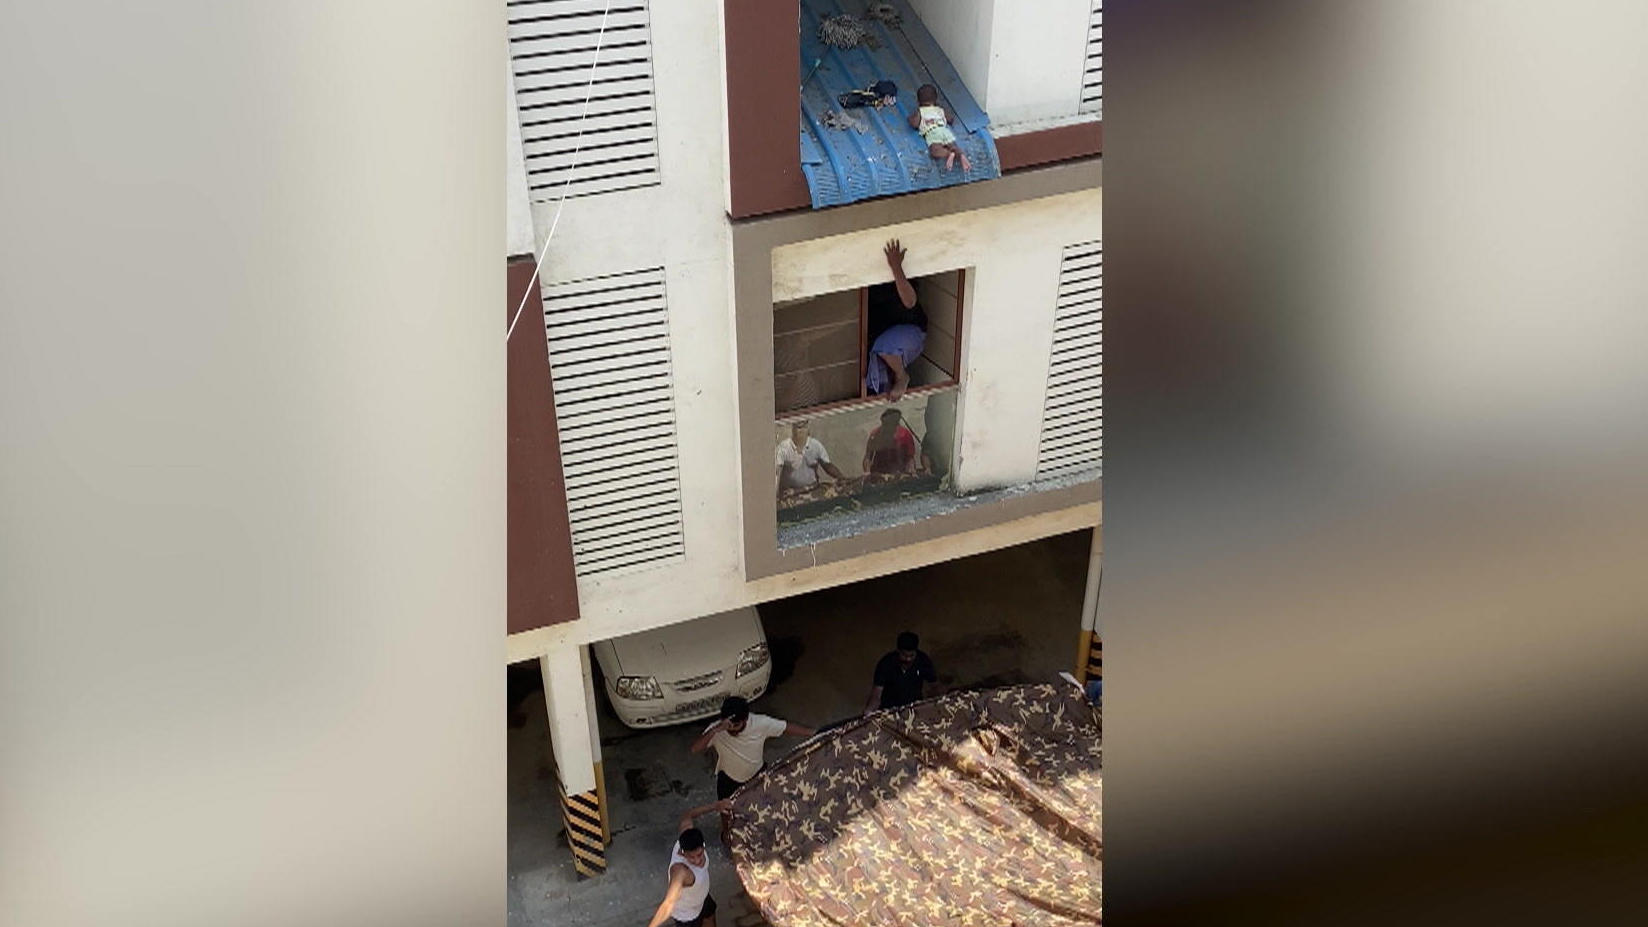 Stavano già mettendo giù le lenzuola!  Una bambina di otto mesi appesa al tetto di casa rischia di cadere